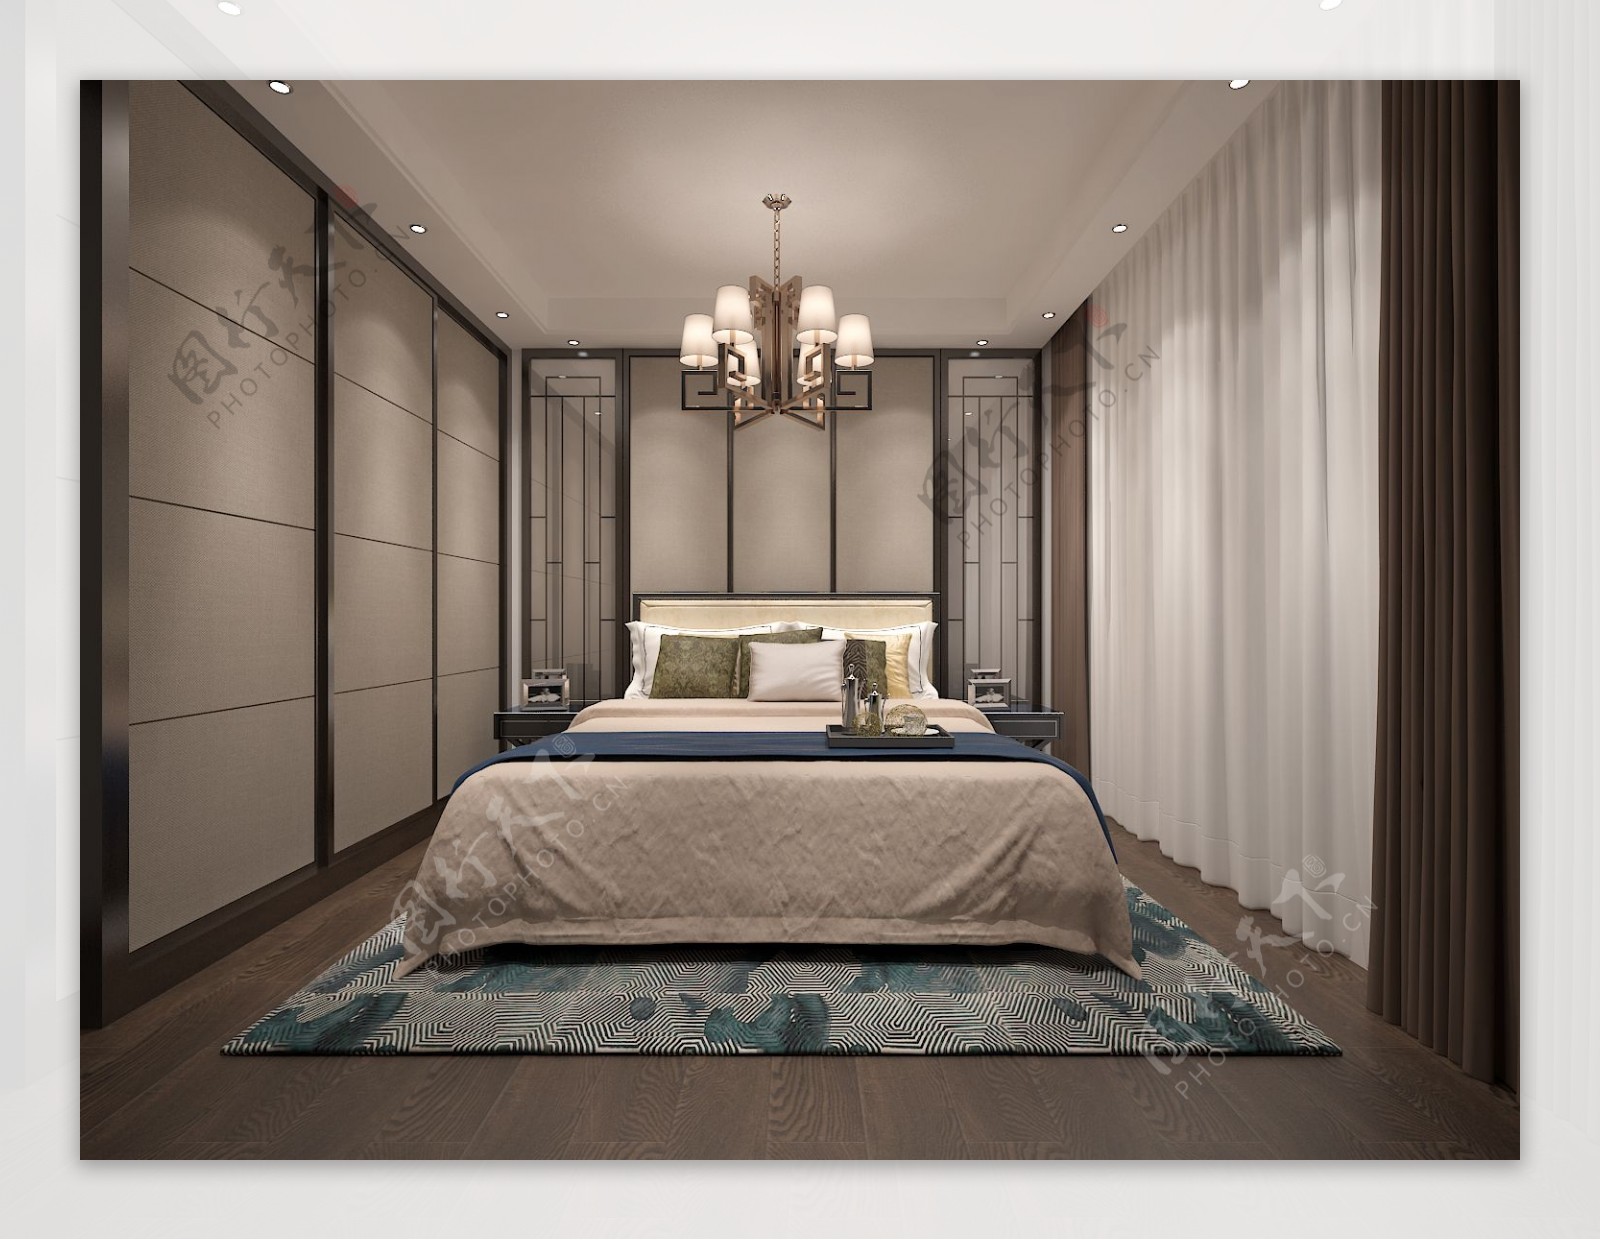 新中式风格卧室空间装修设计效果图